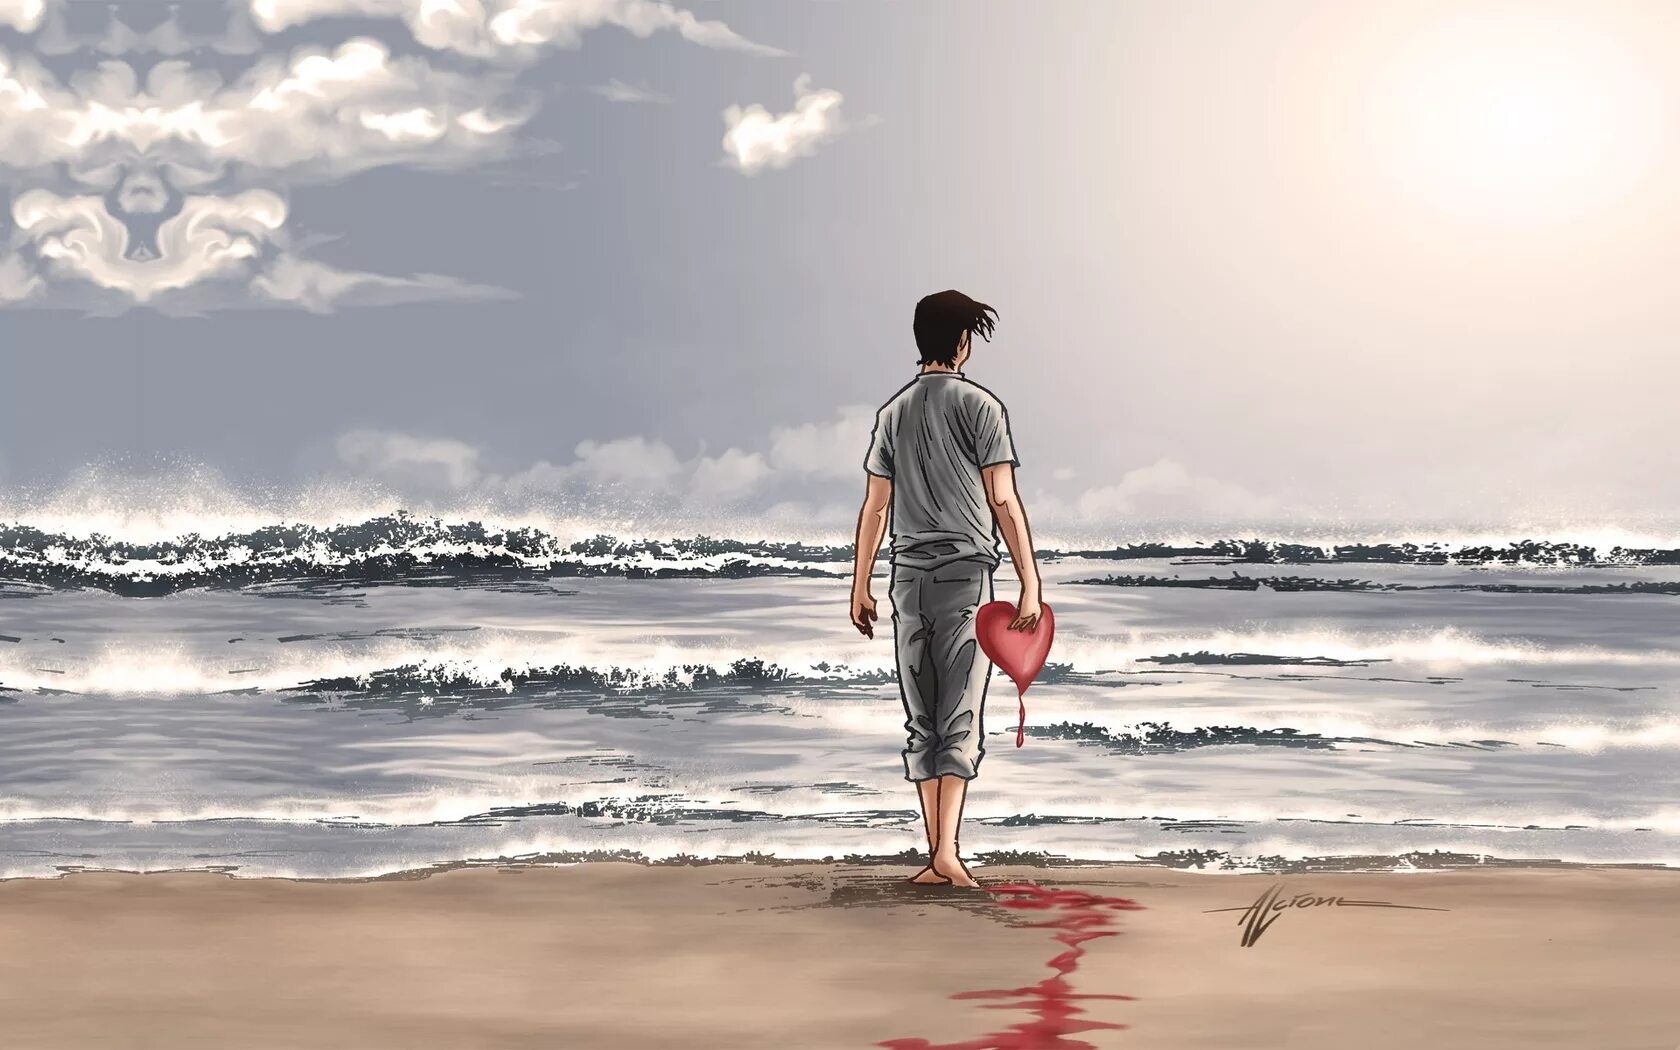 Любовь кидать. Люди на море. Парень с сердцем. Одинокий человек на берегу моря. Человек с разбитым сердцем.